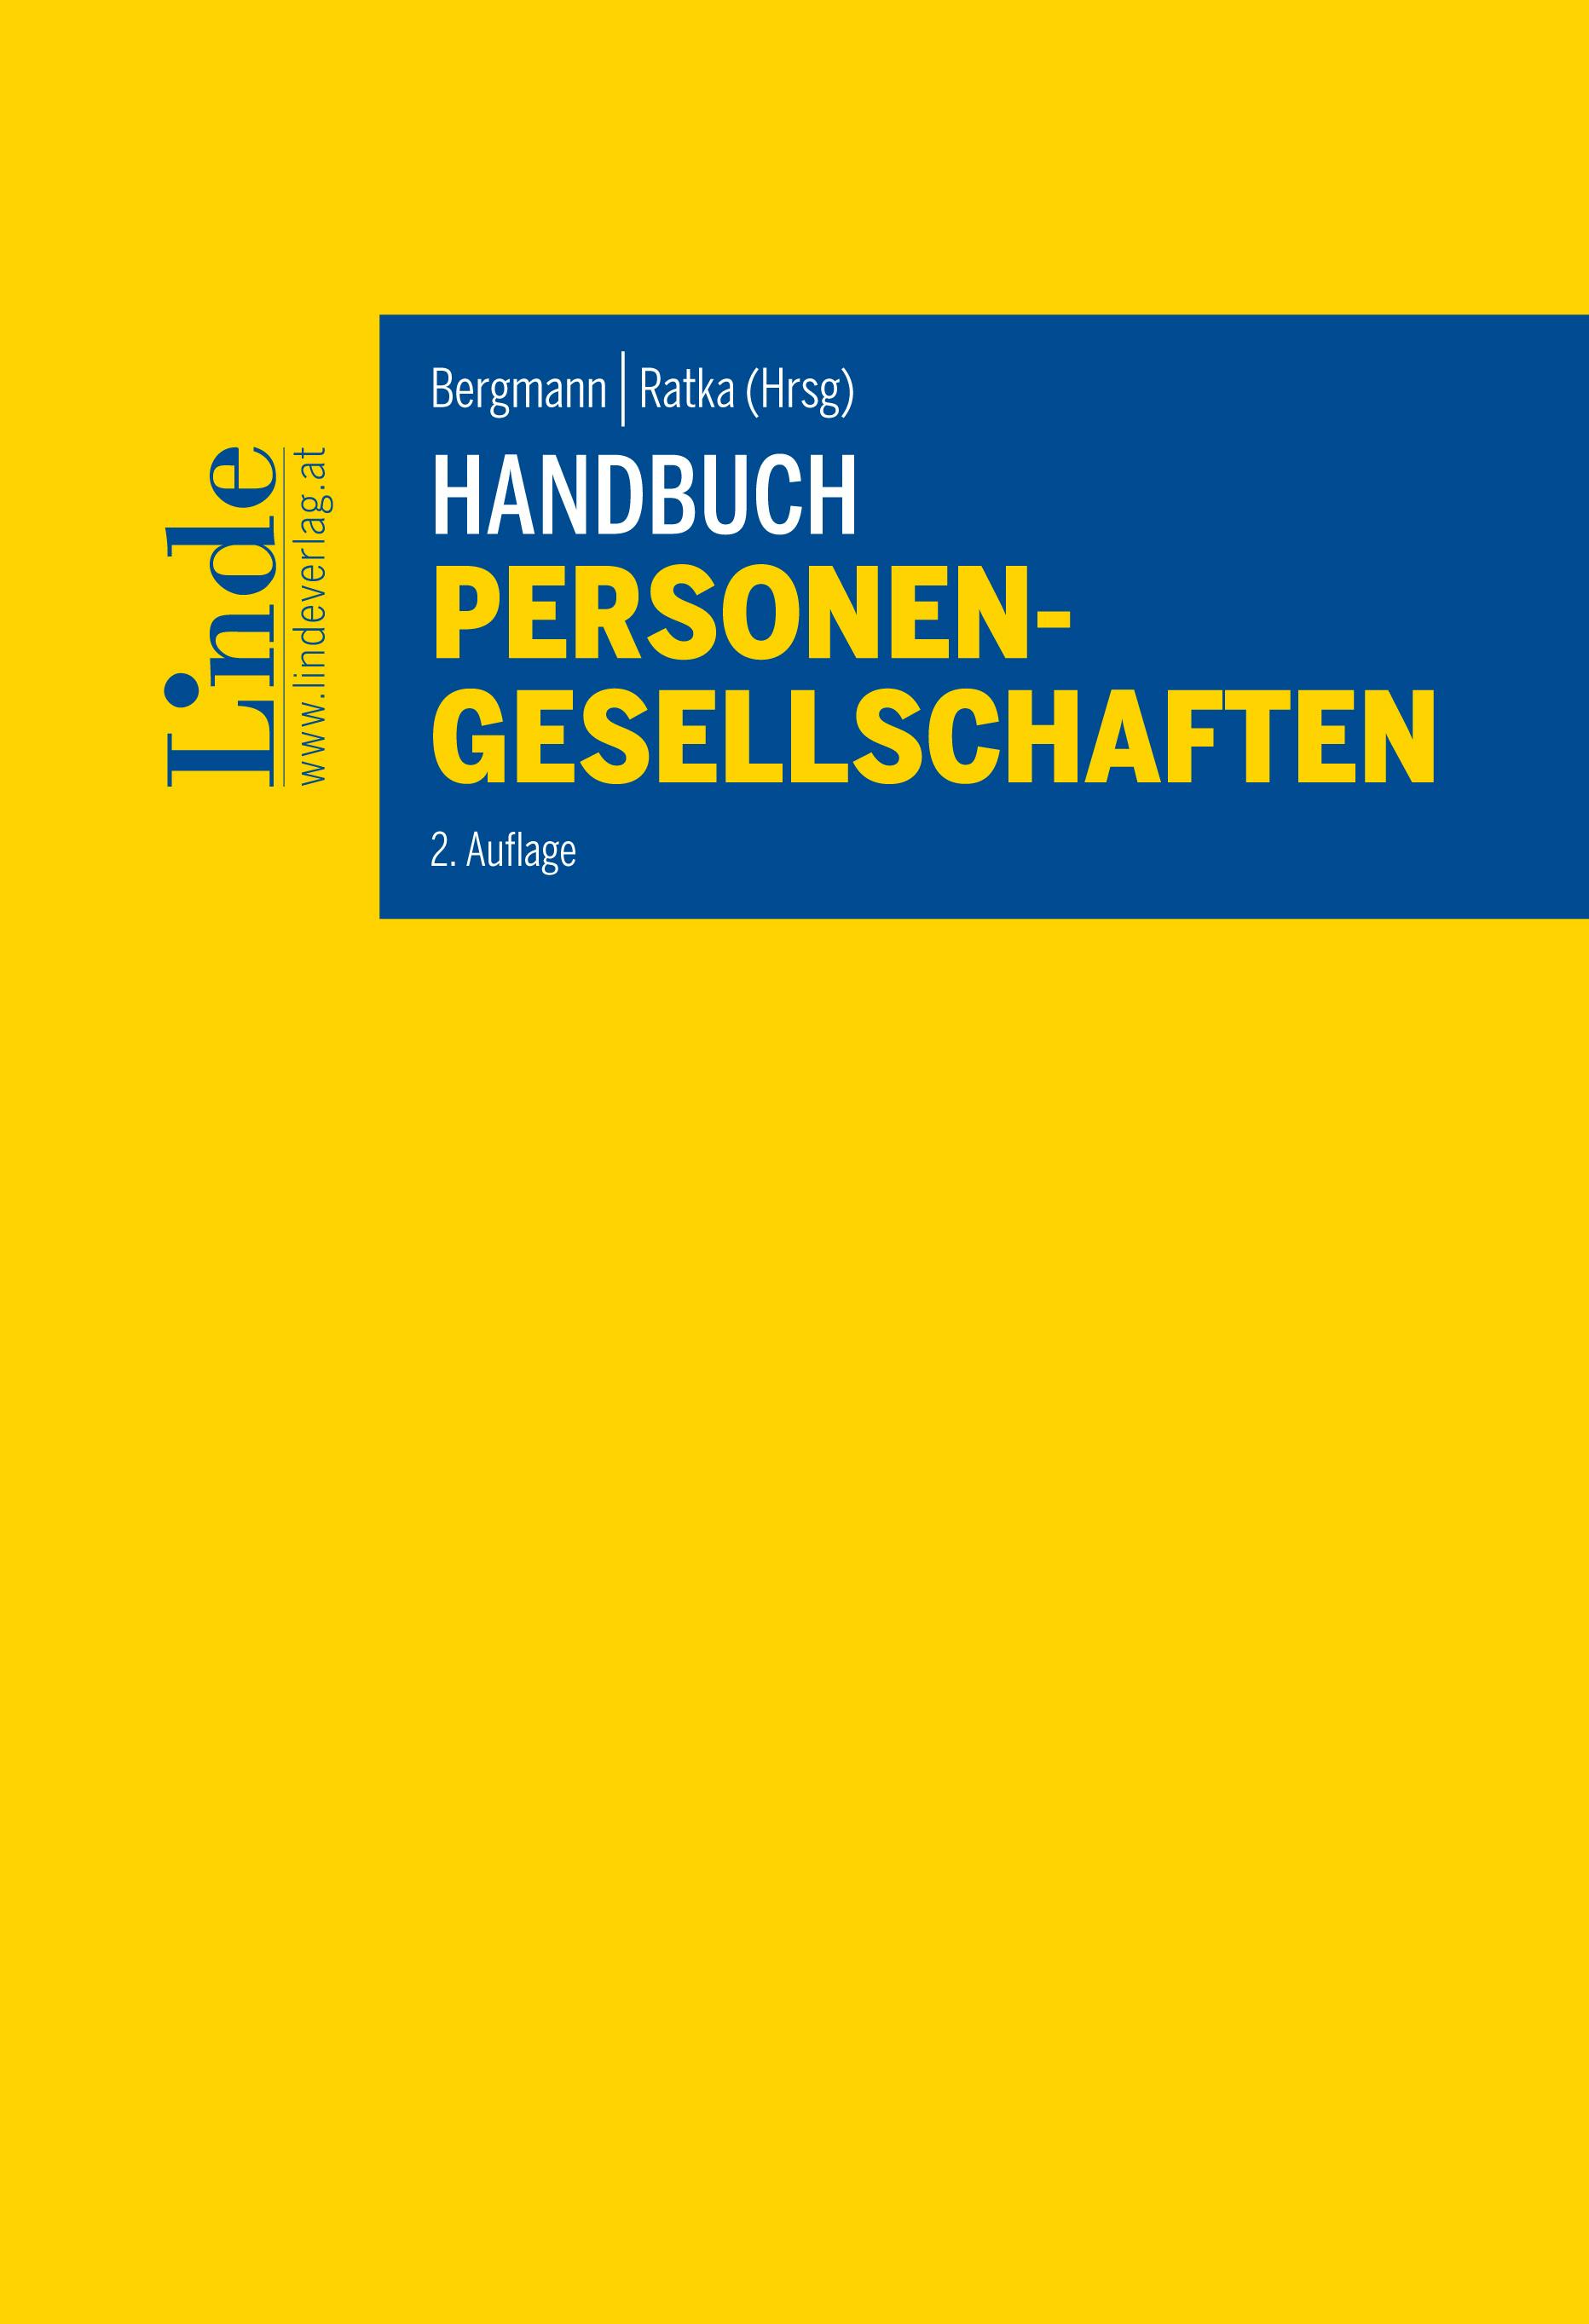 Bergmann | Ratka (Hrsg.)
Handbuch Personengesellschaften